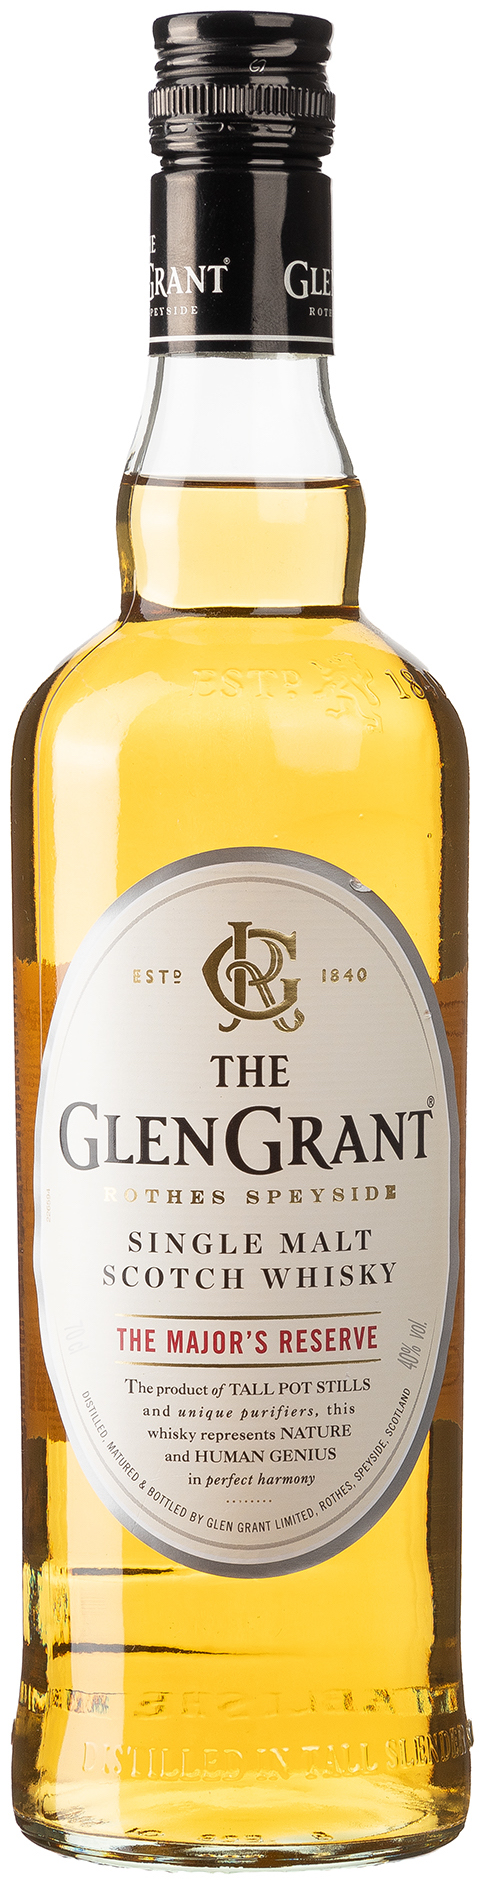 GLEN GRANT Single Malt Scotch Whisky The Mayor's Reserve 40% vol. 0,7L